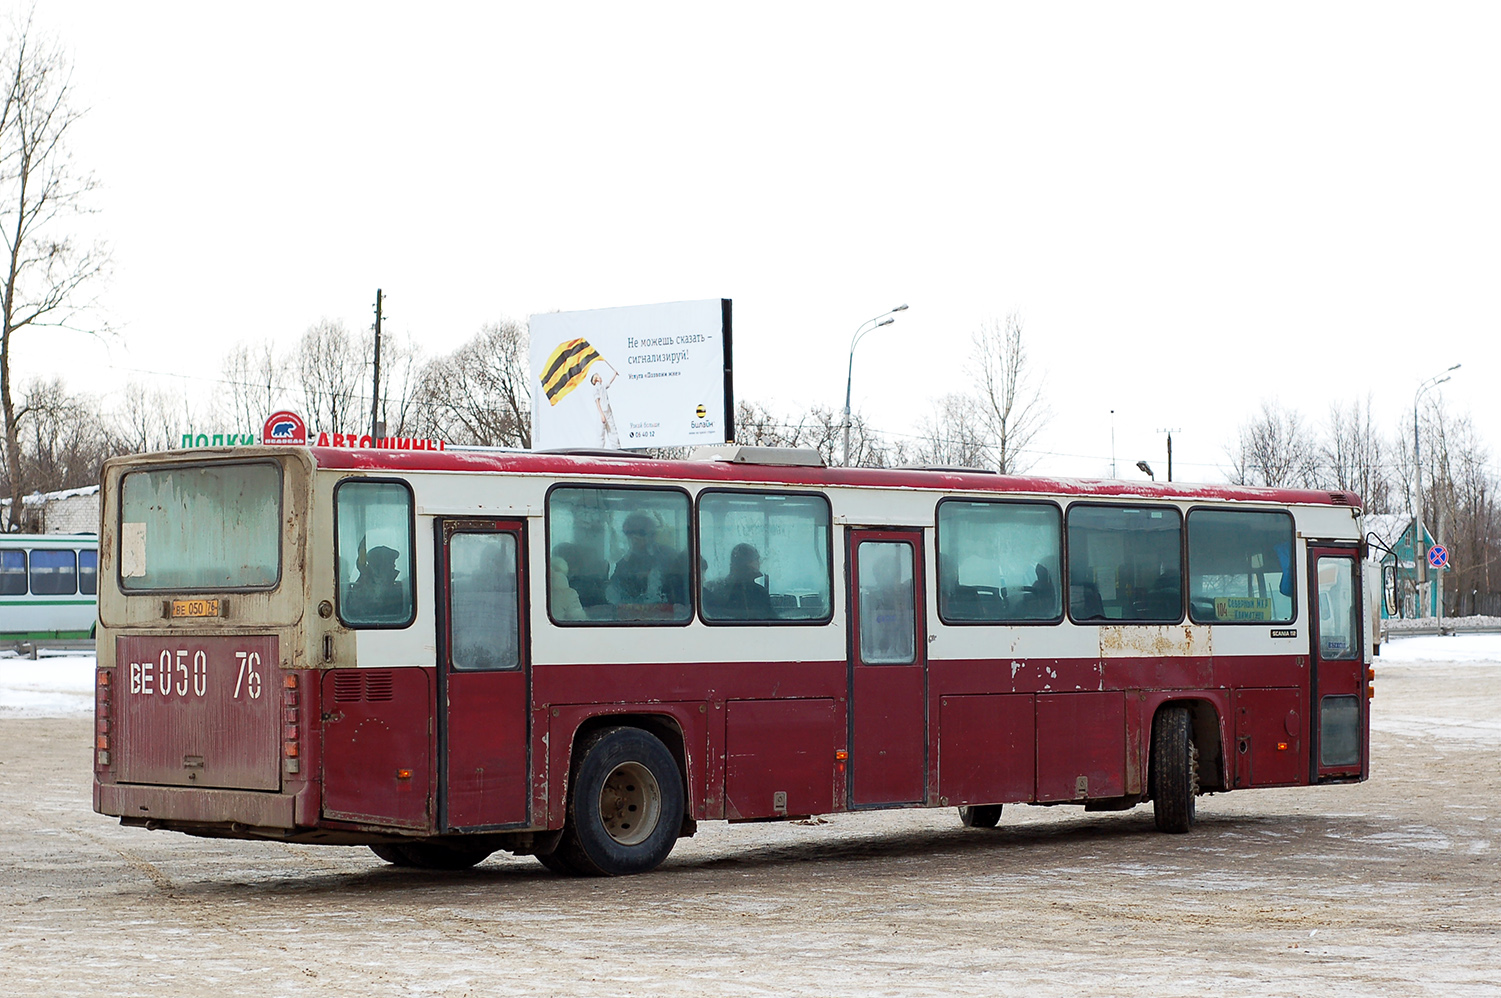 Jaroszlavli terület, Scania CR112 sz.: ВЕ 050 76